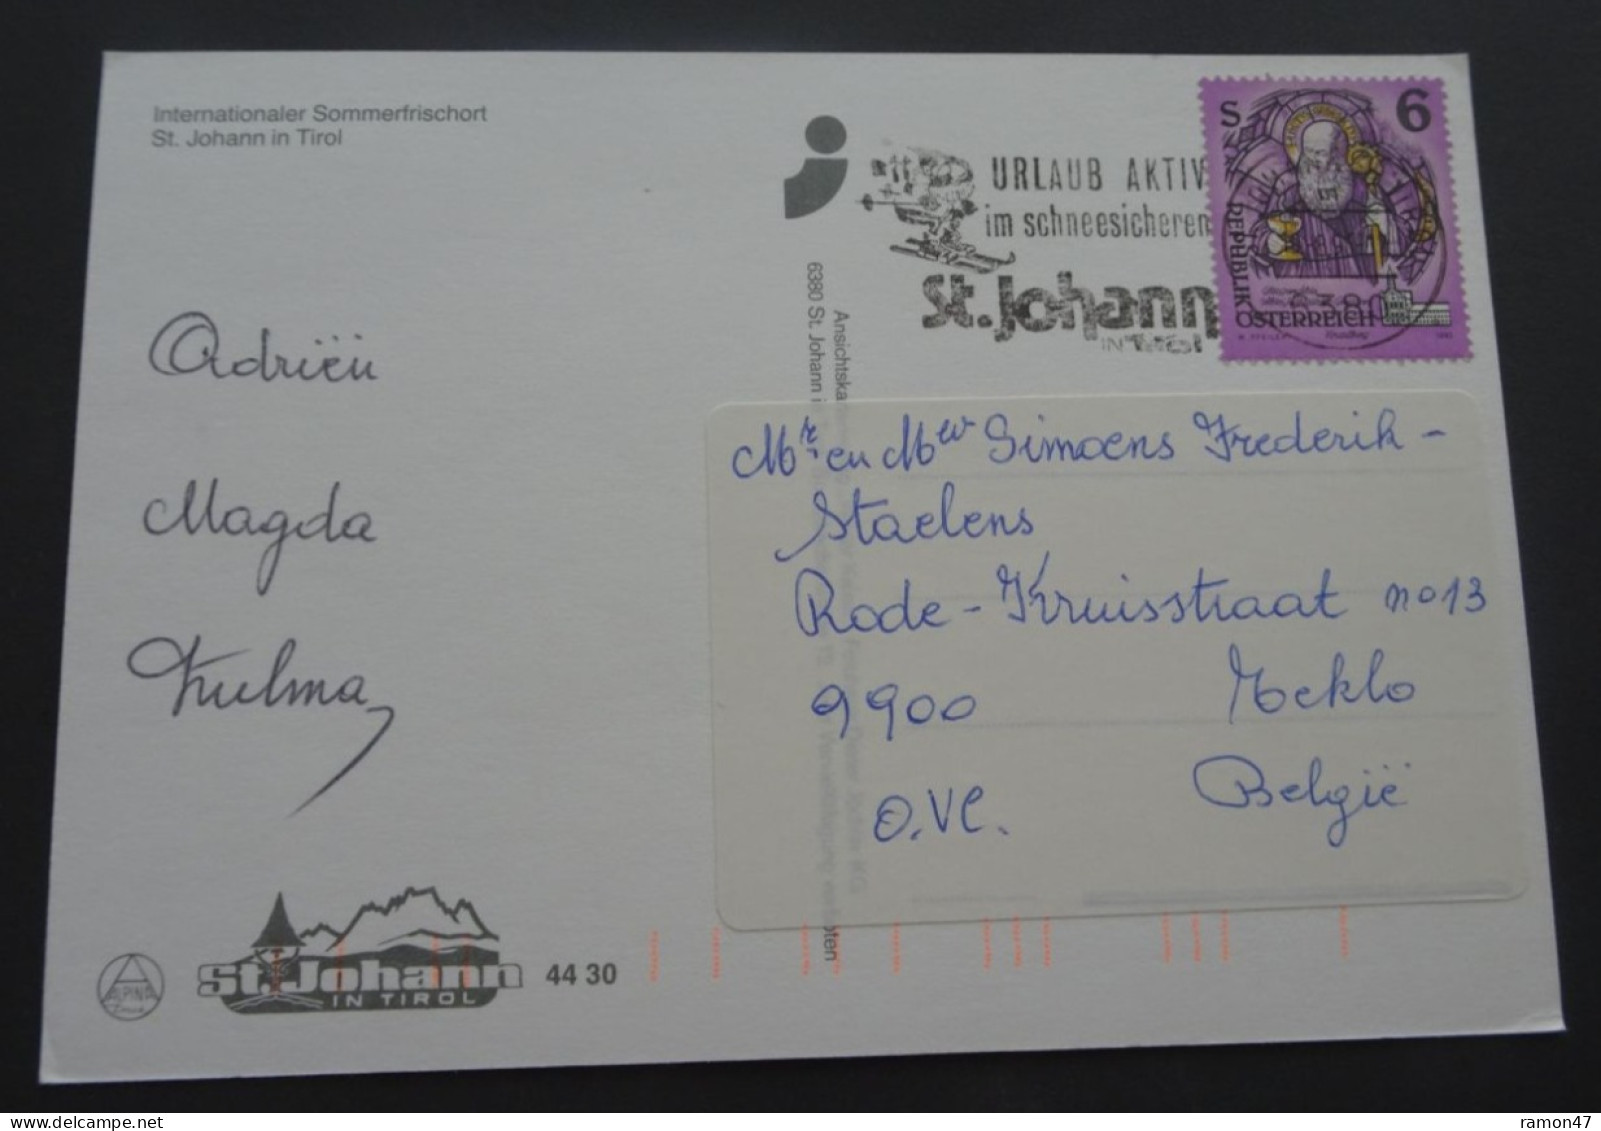 St. Johann In Tirol - Internationaler Sommerfrischort - Ansichtskartenverlag "Wilder-Kaiser-Verlag", # 4430 - St. Johann In Tirol